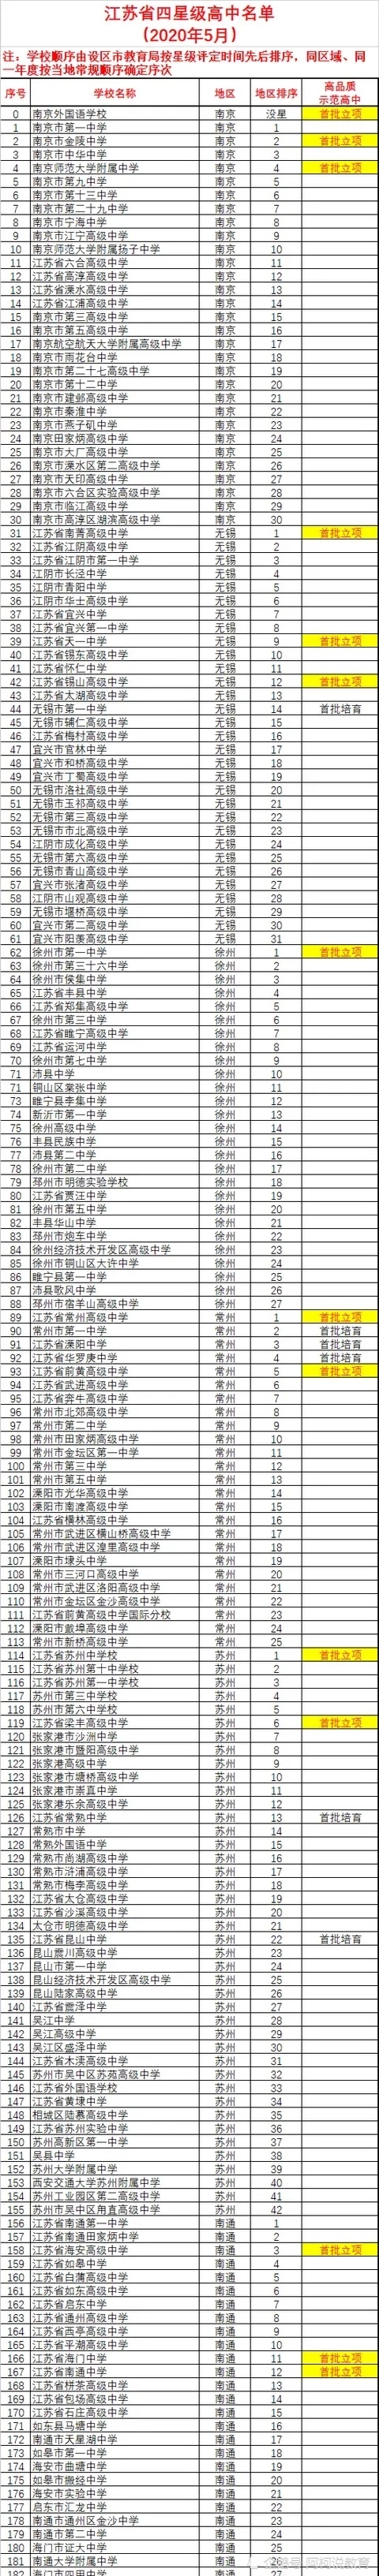 江苏高中高考排名%_2020年江苏各市高考高分比例排行榜